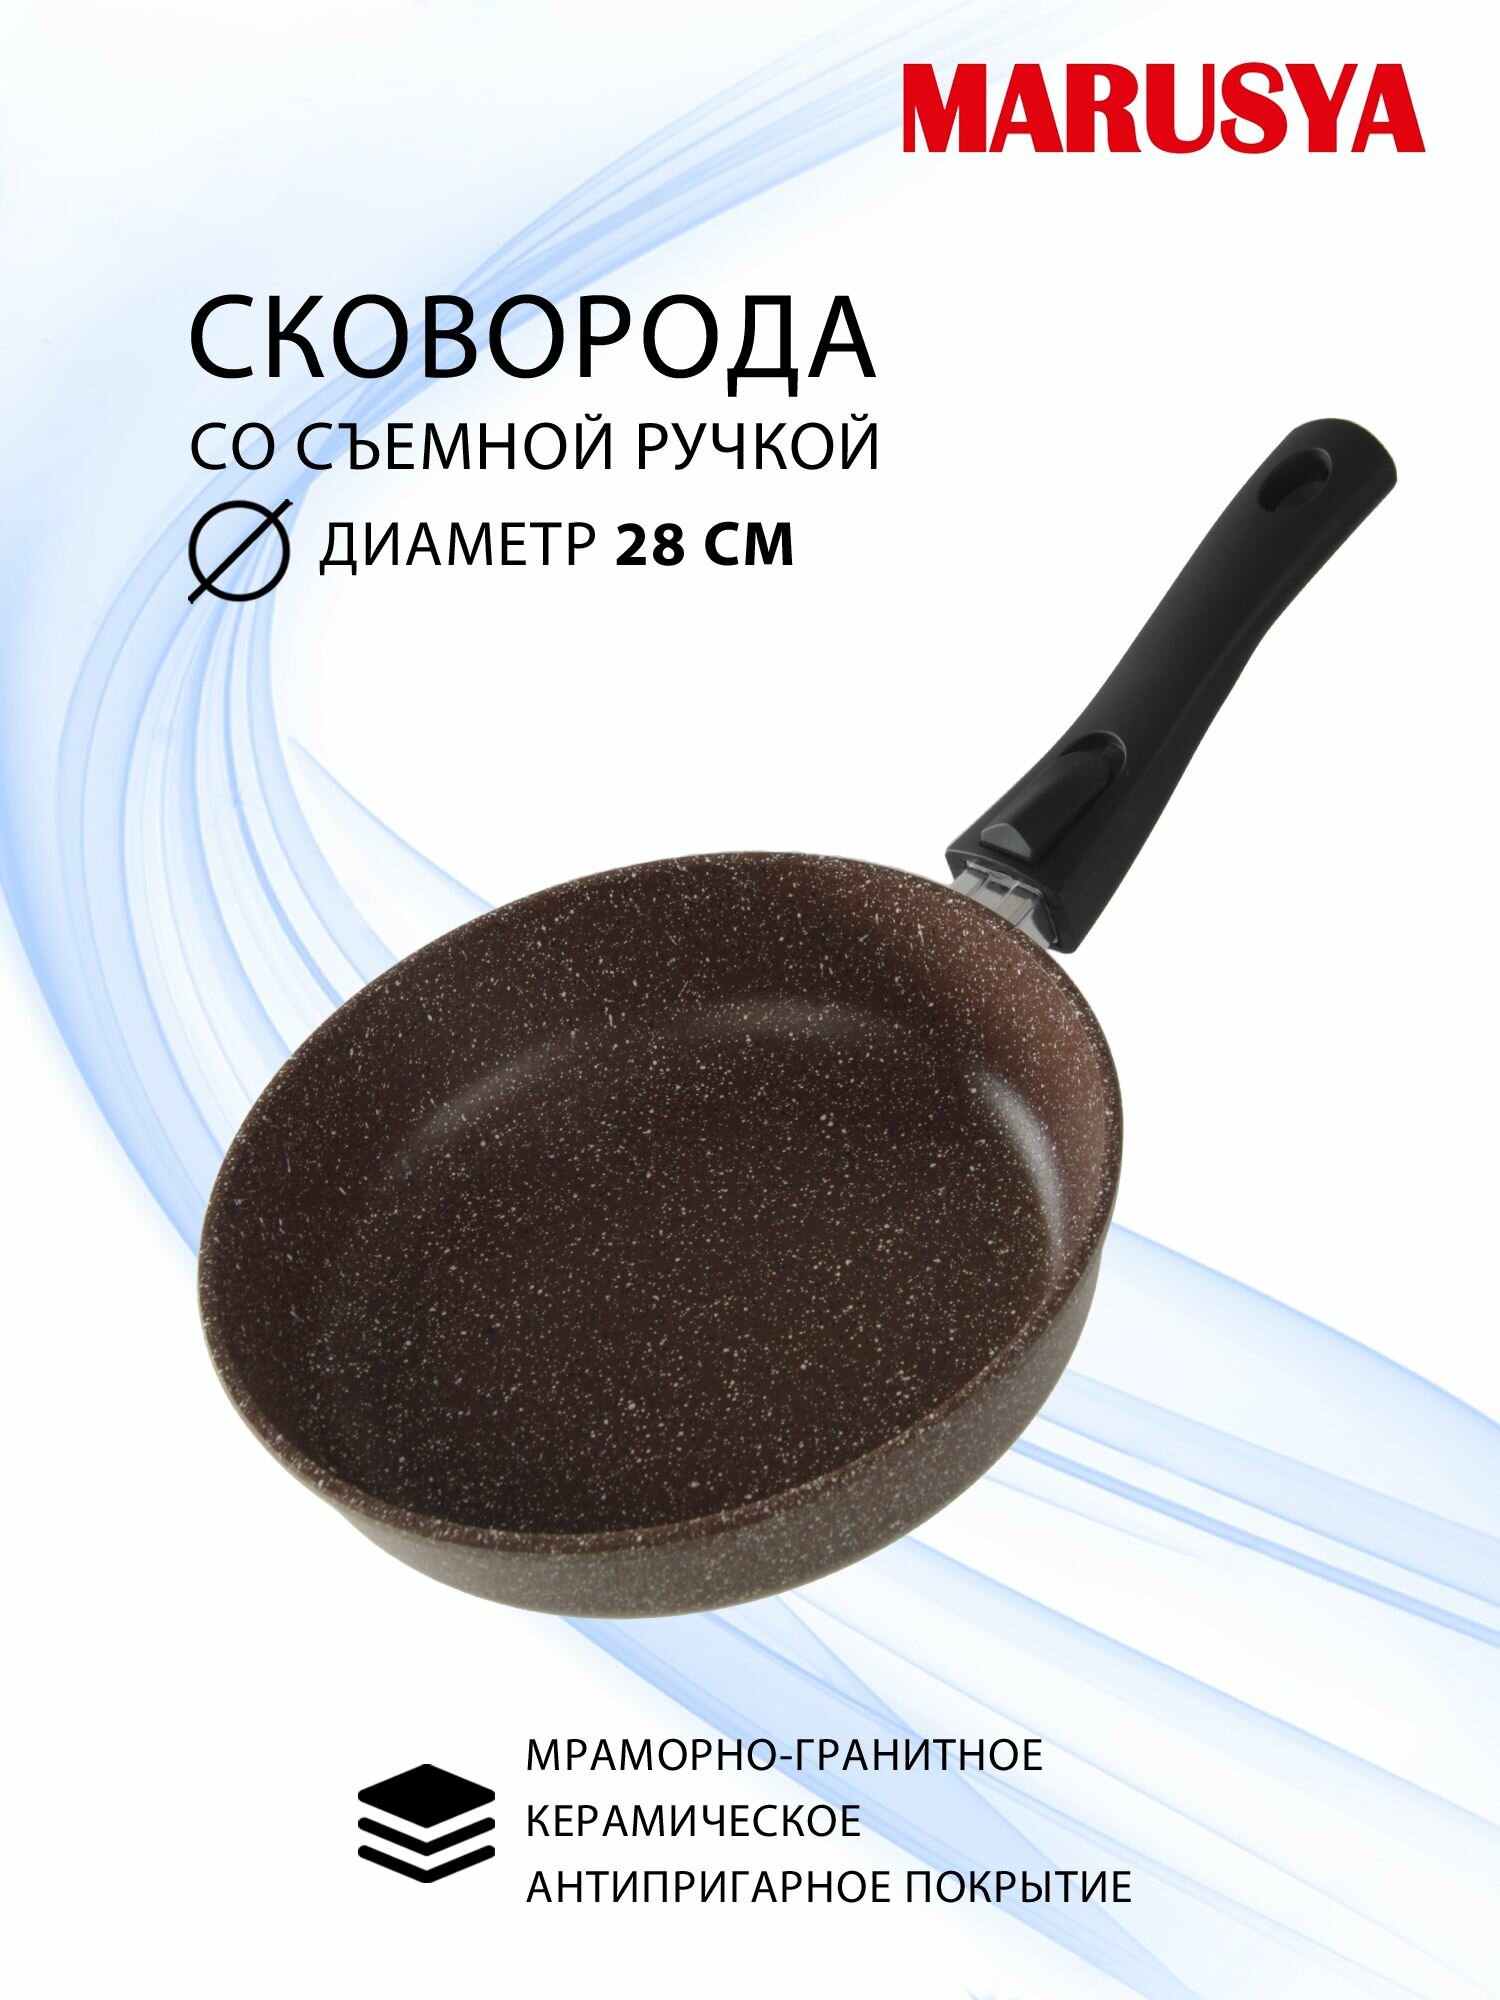 Сковорода 28 см глубокая с антипригарным покрытием GREBLON со съемной бакелитовой ручкой MARUSYA